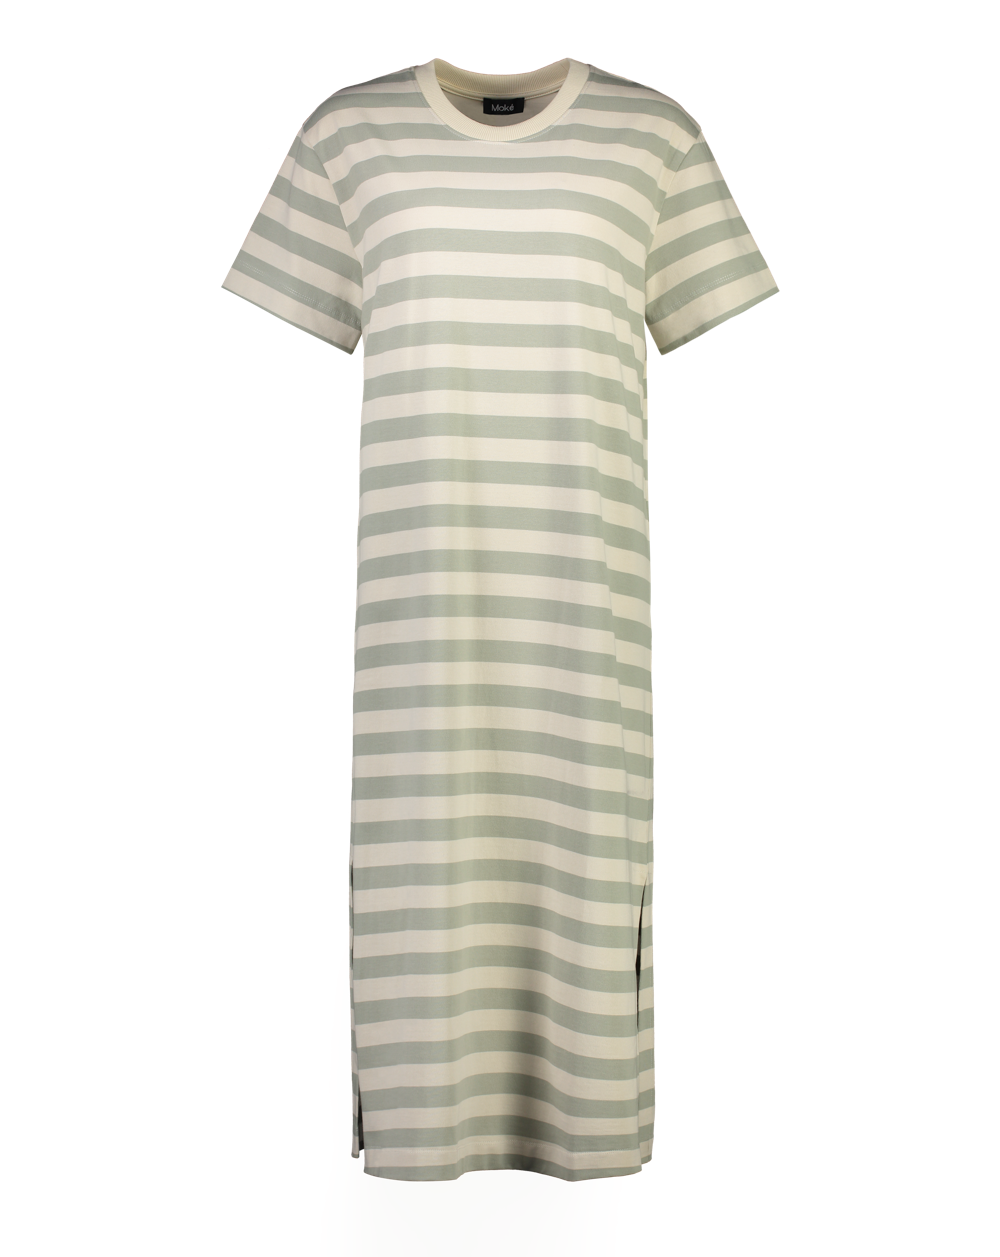 Sally Women's Cotton T-shirt Dress - Oyster/Sage Stripe - Moke Apparel